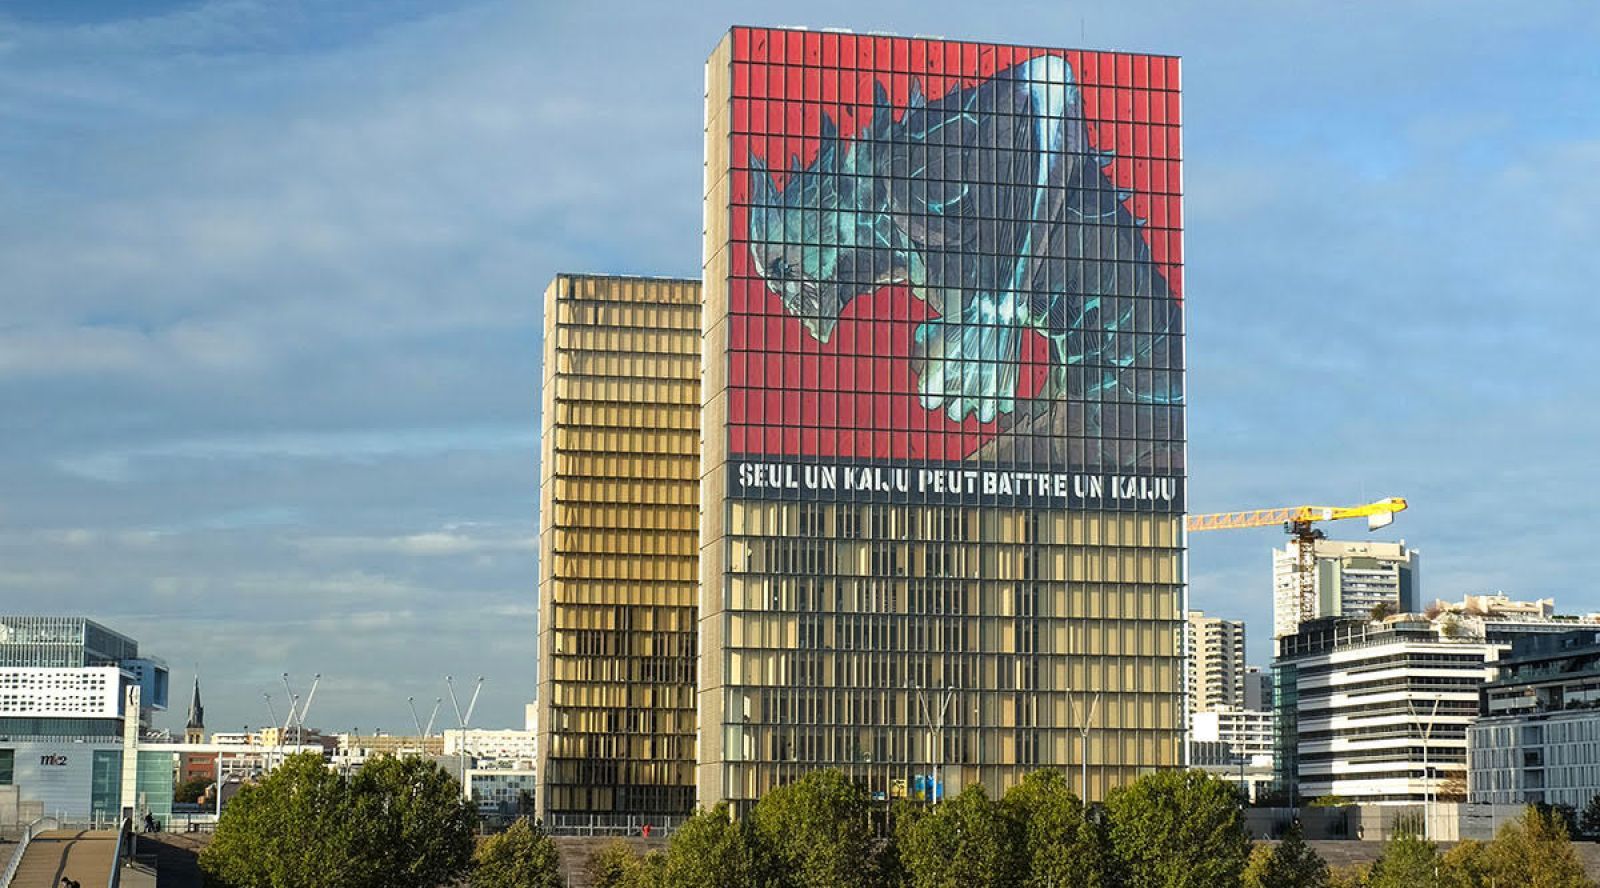 Le manga "Kaiju" à la Bibliothèque nationale de France